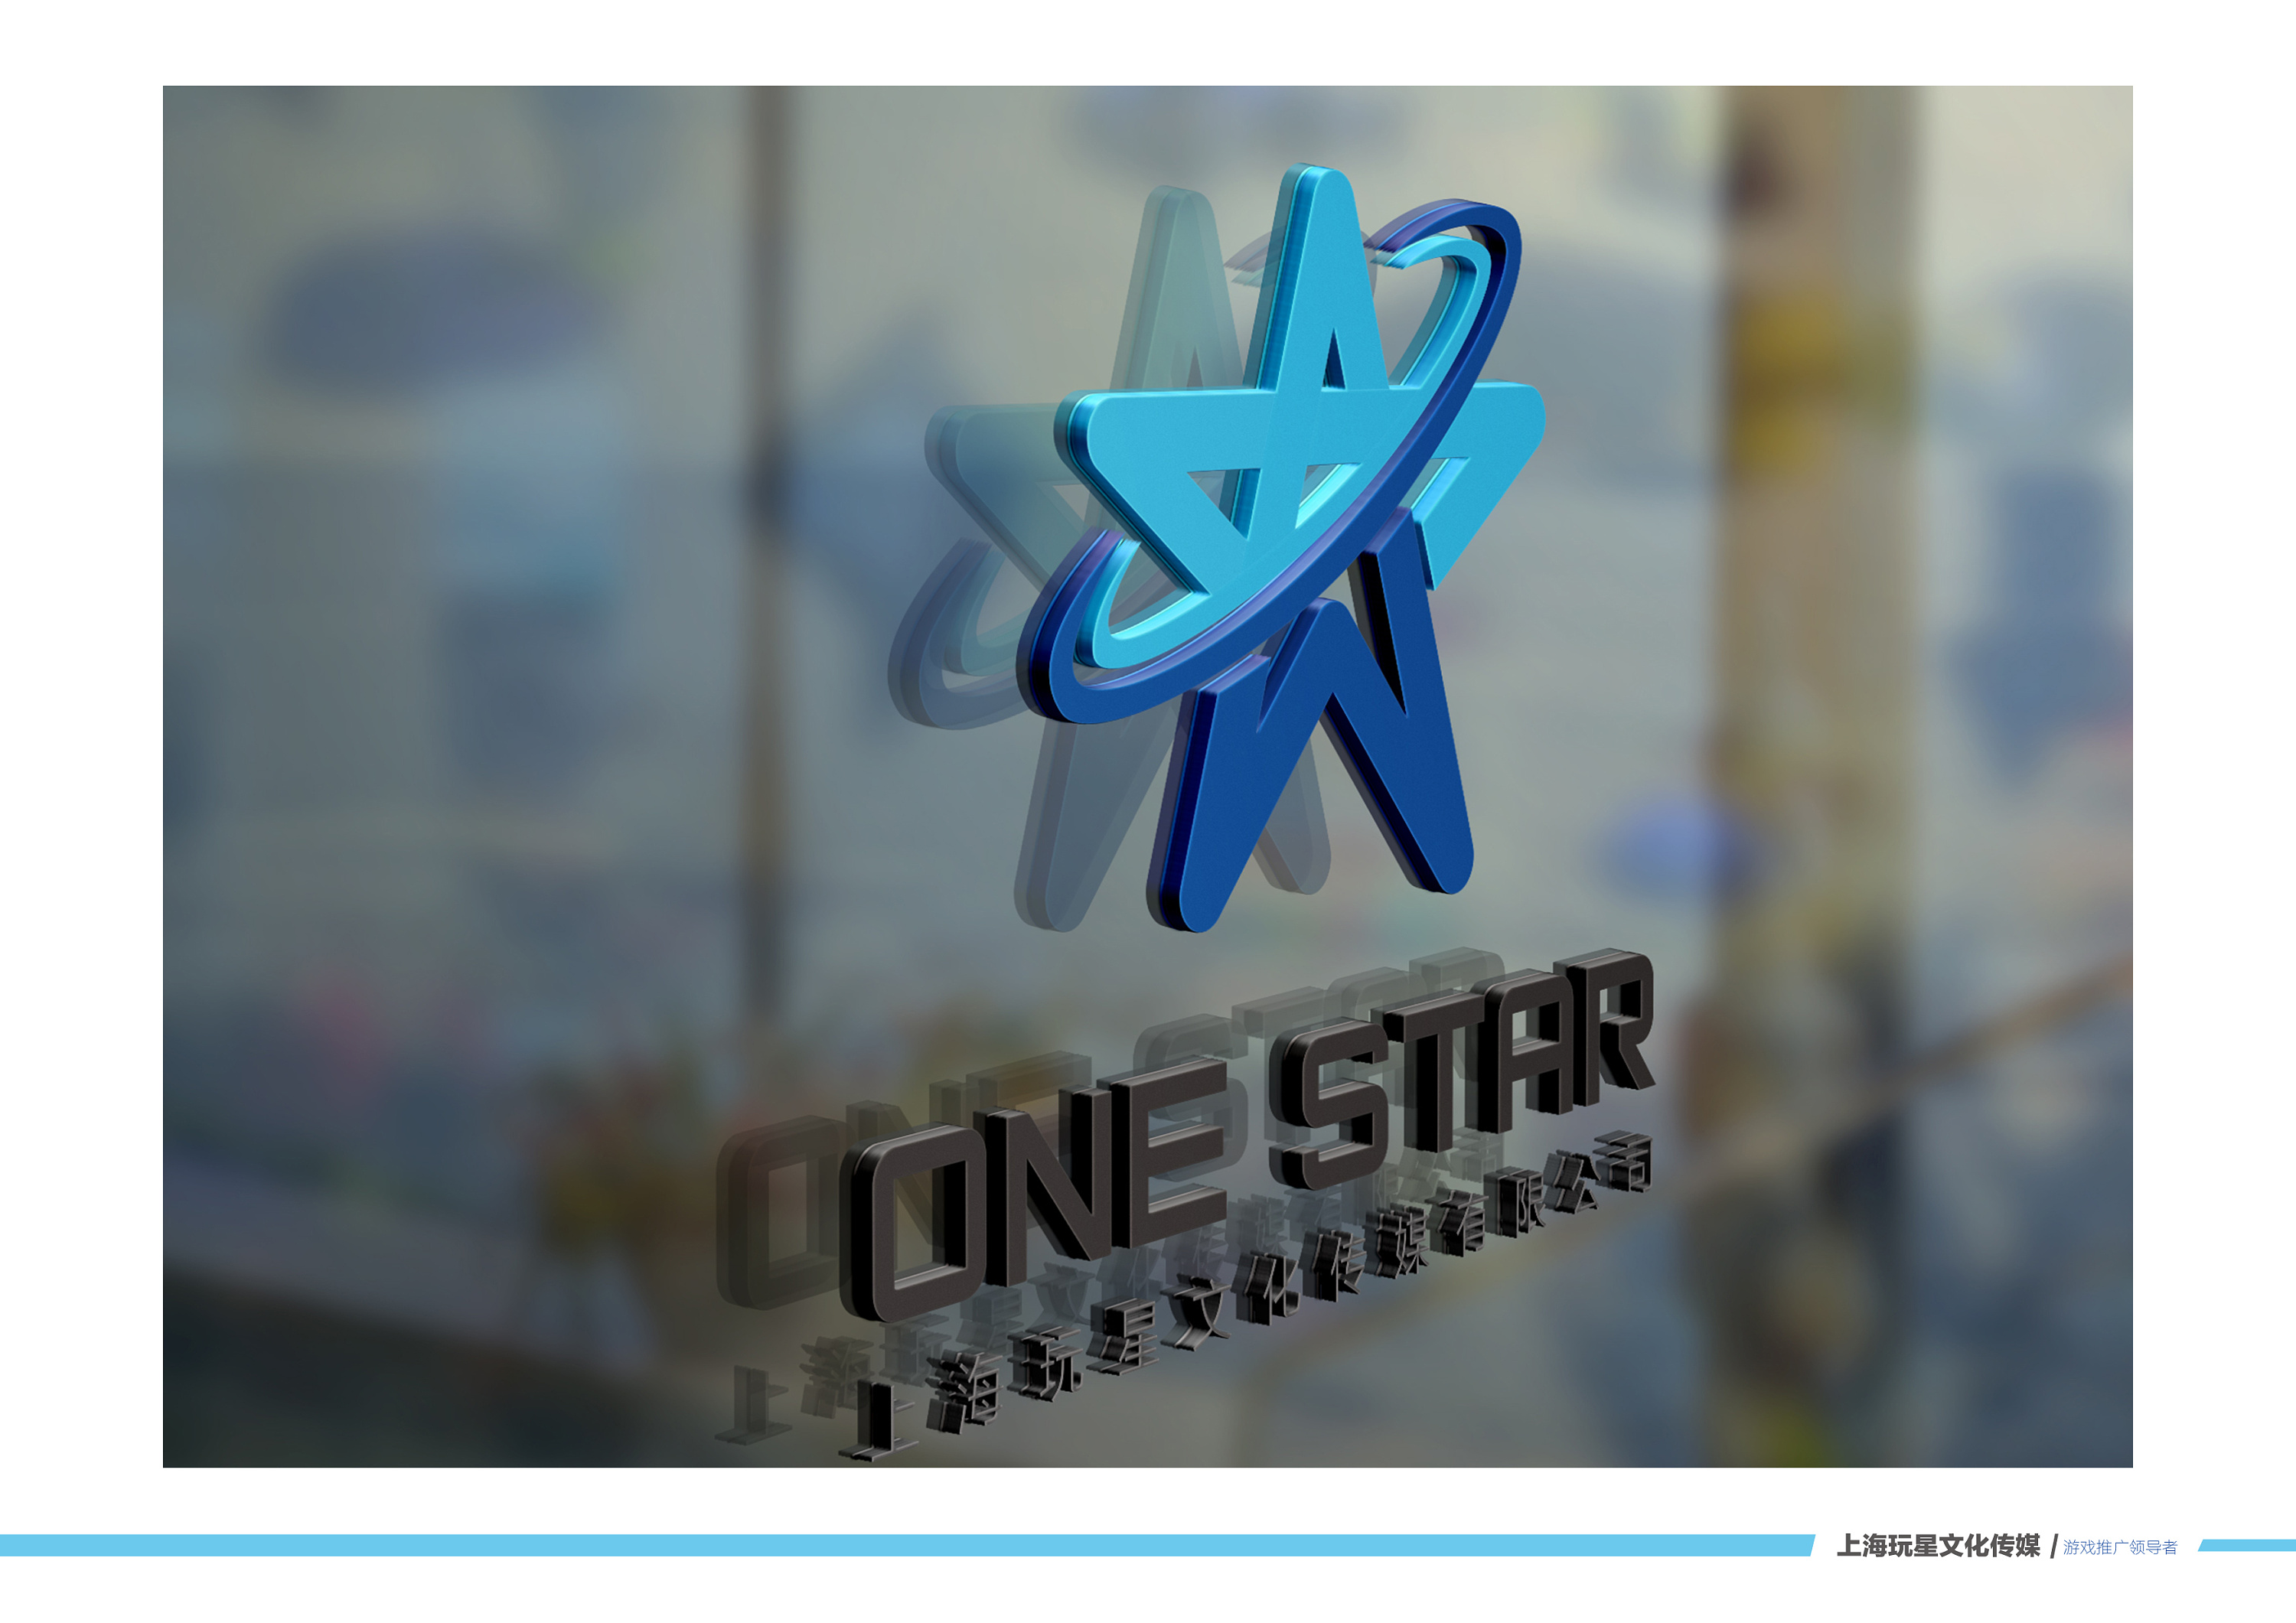 上海玩星文化传媒 logo展示|平面|品牌|光绘设计